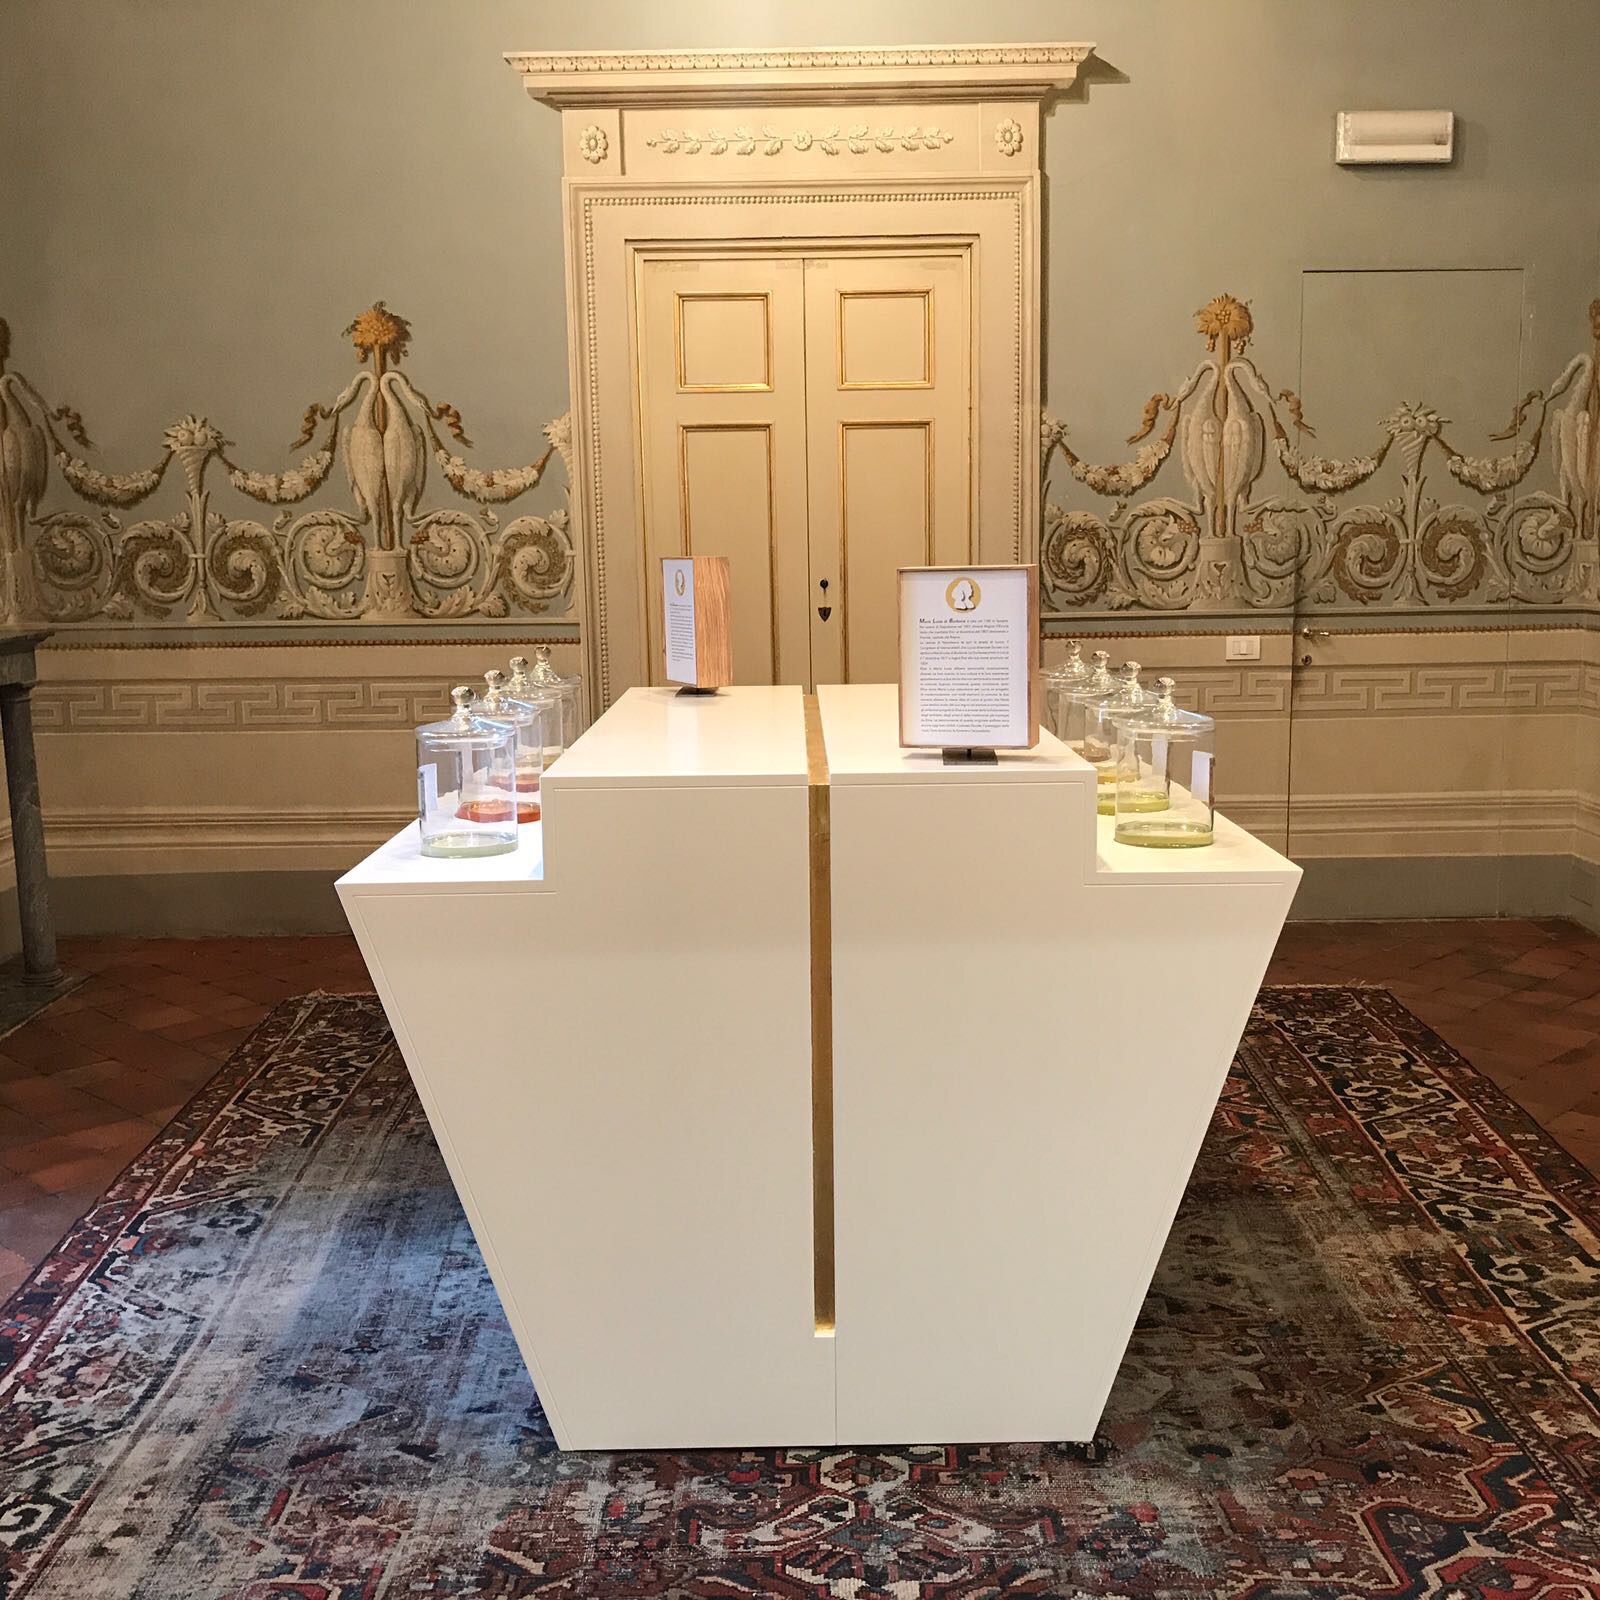 Some perfumes shown in the exhibit "Il Naso e la Storia" - Elisa's Theater